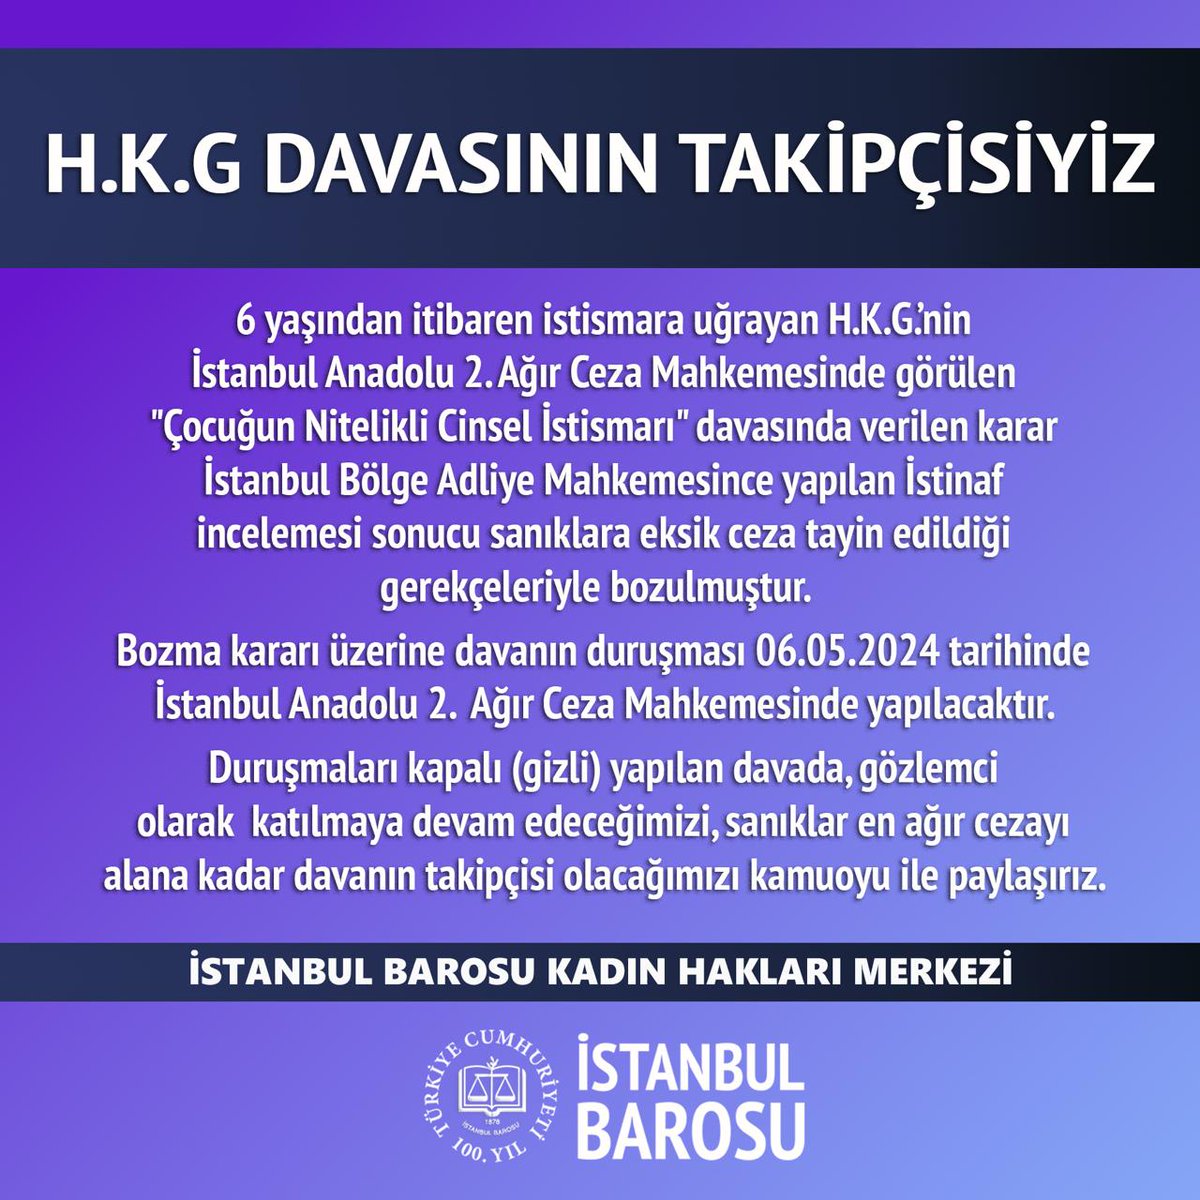 HKG DAVASININ TAKİPÇİSİYİZ 6 yaşından itibaren istismara uğrayan H.K.G.’nin İstanbul Anadolu 2. Ağır Ceza Mahkemesinde görülen 'Çocuğun Nitelikli Cinsel İstismarı' davasında verilen karar İstanbul Bölge Adliye Mahkemesince yapılan